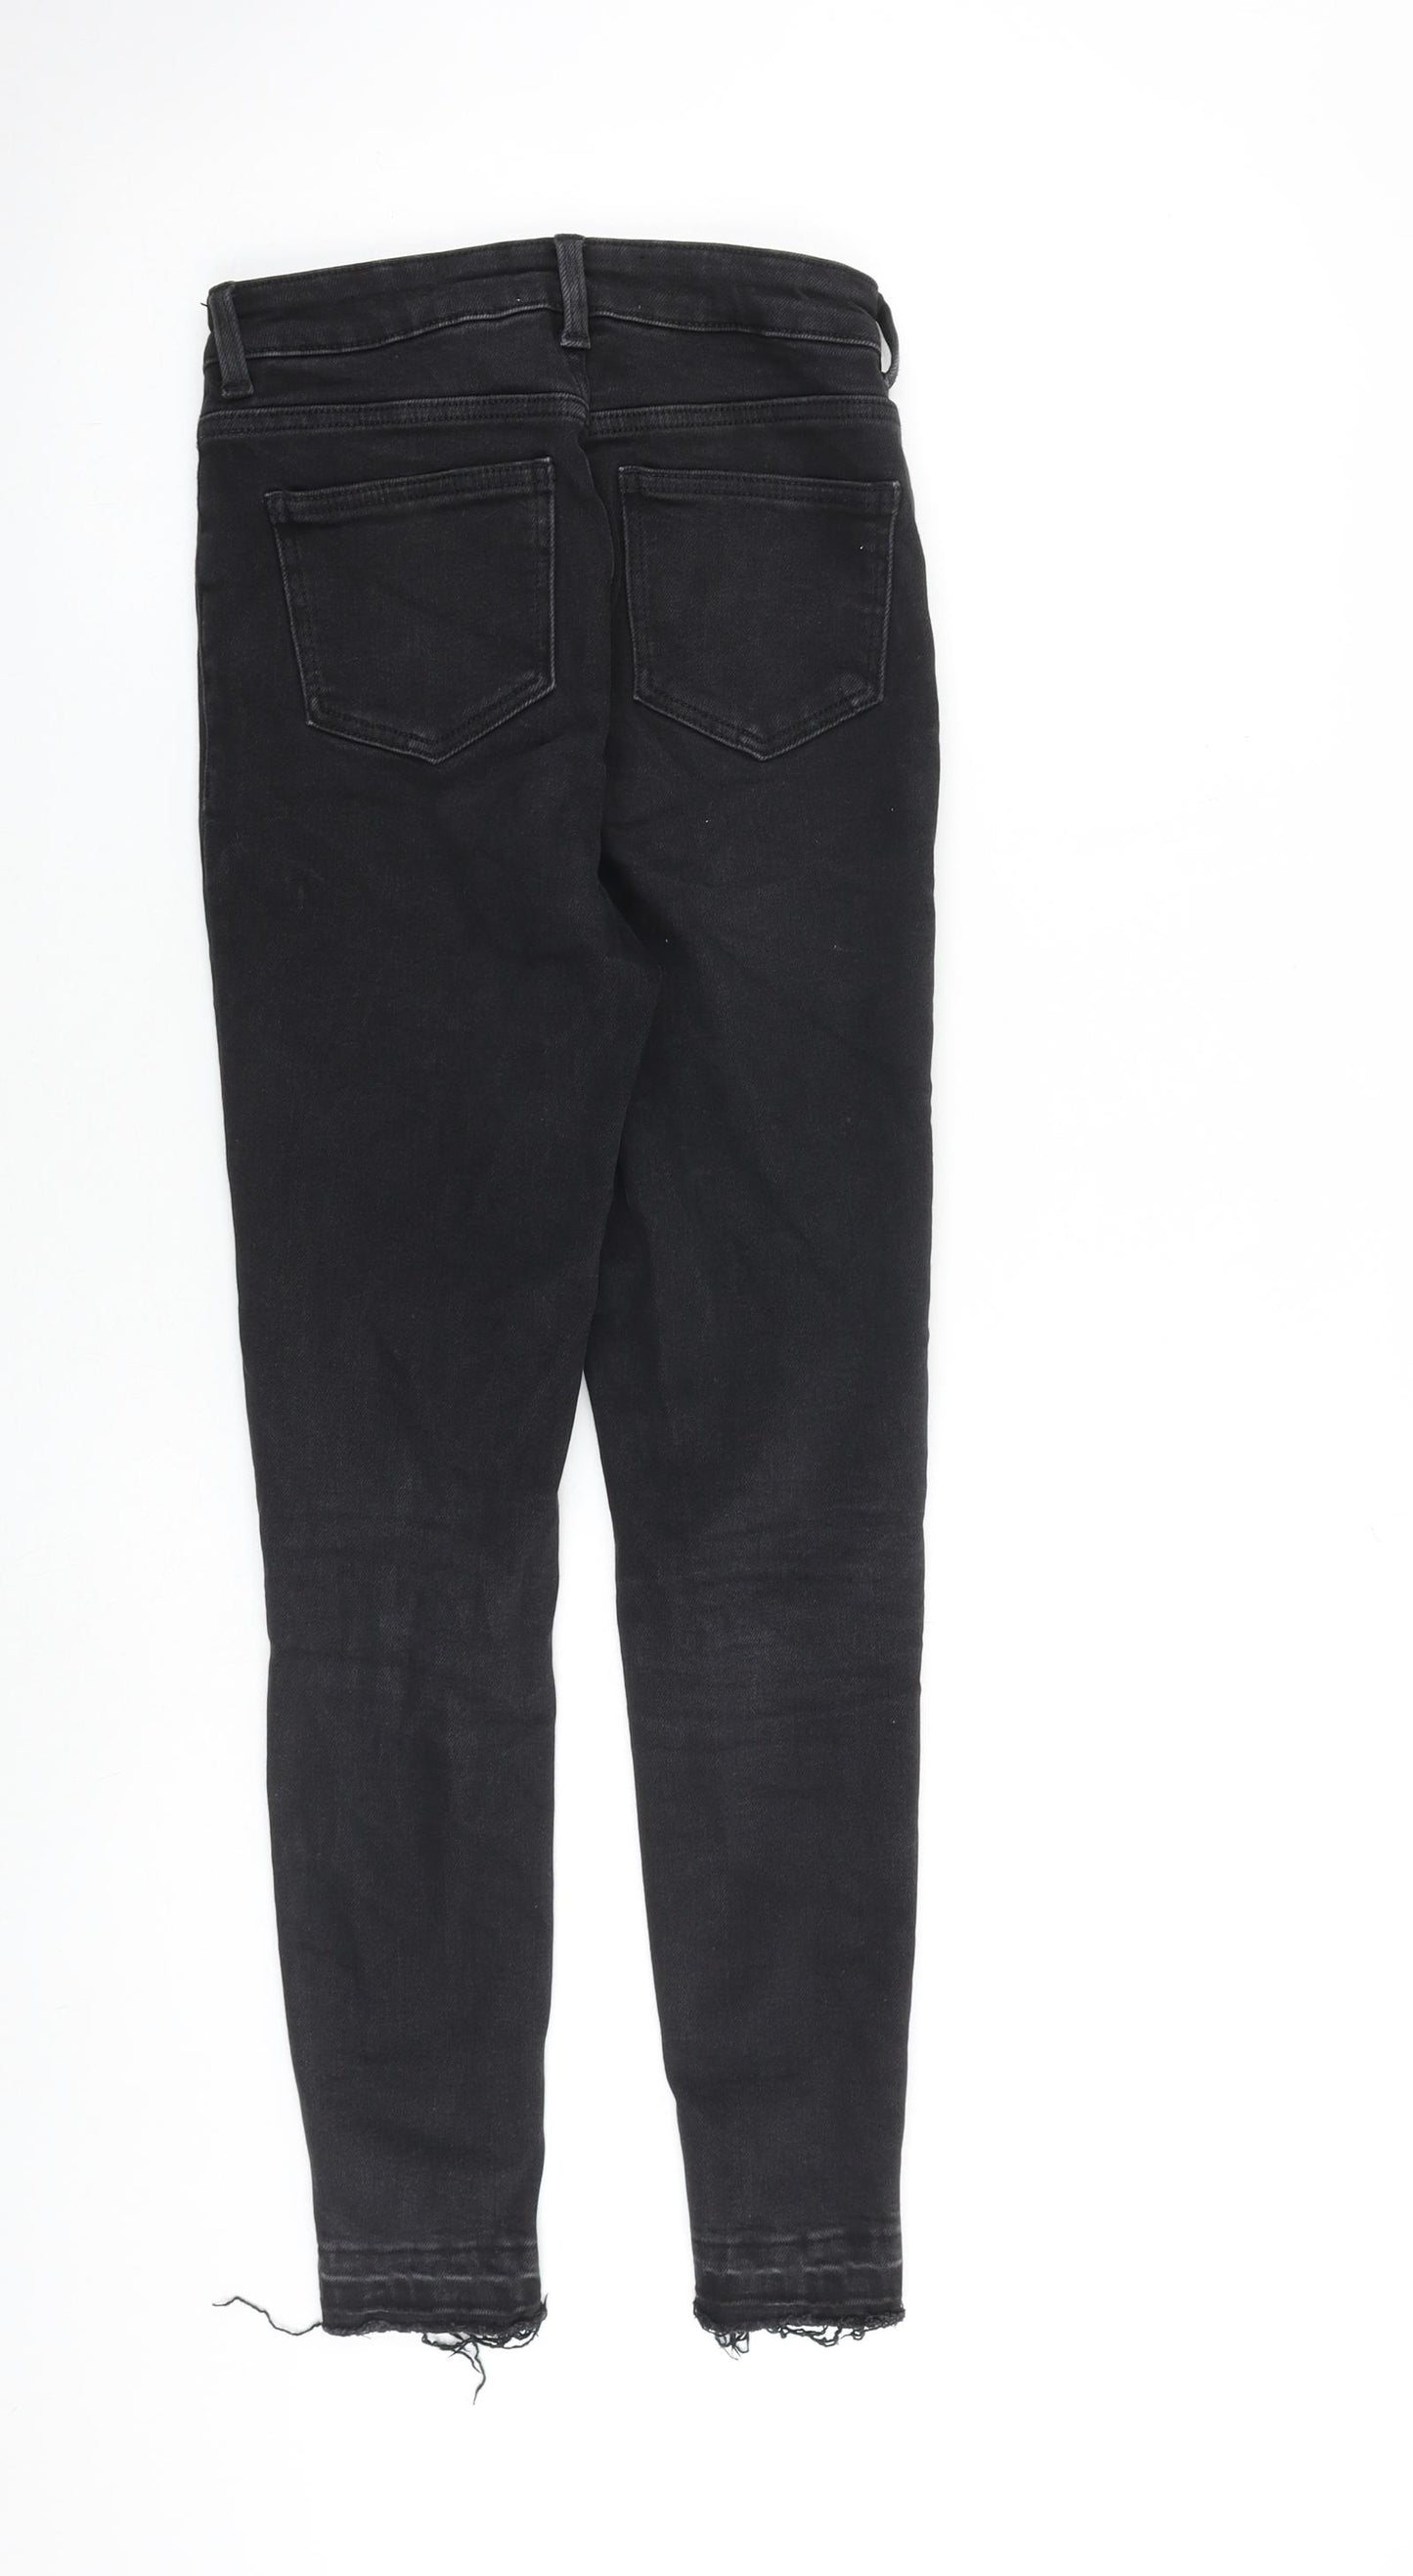 New Look Womens Black Cotton Skinny Jeans Size 8 L27 in Slim Zip - Raw Hem